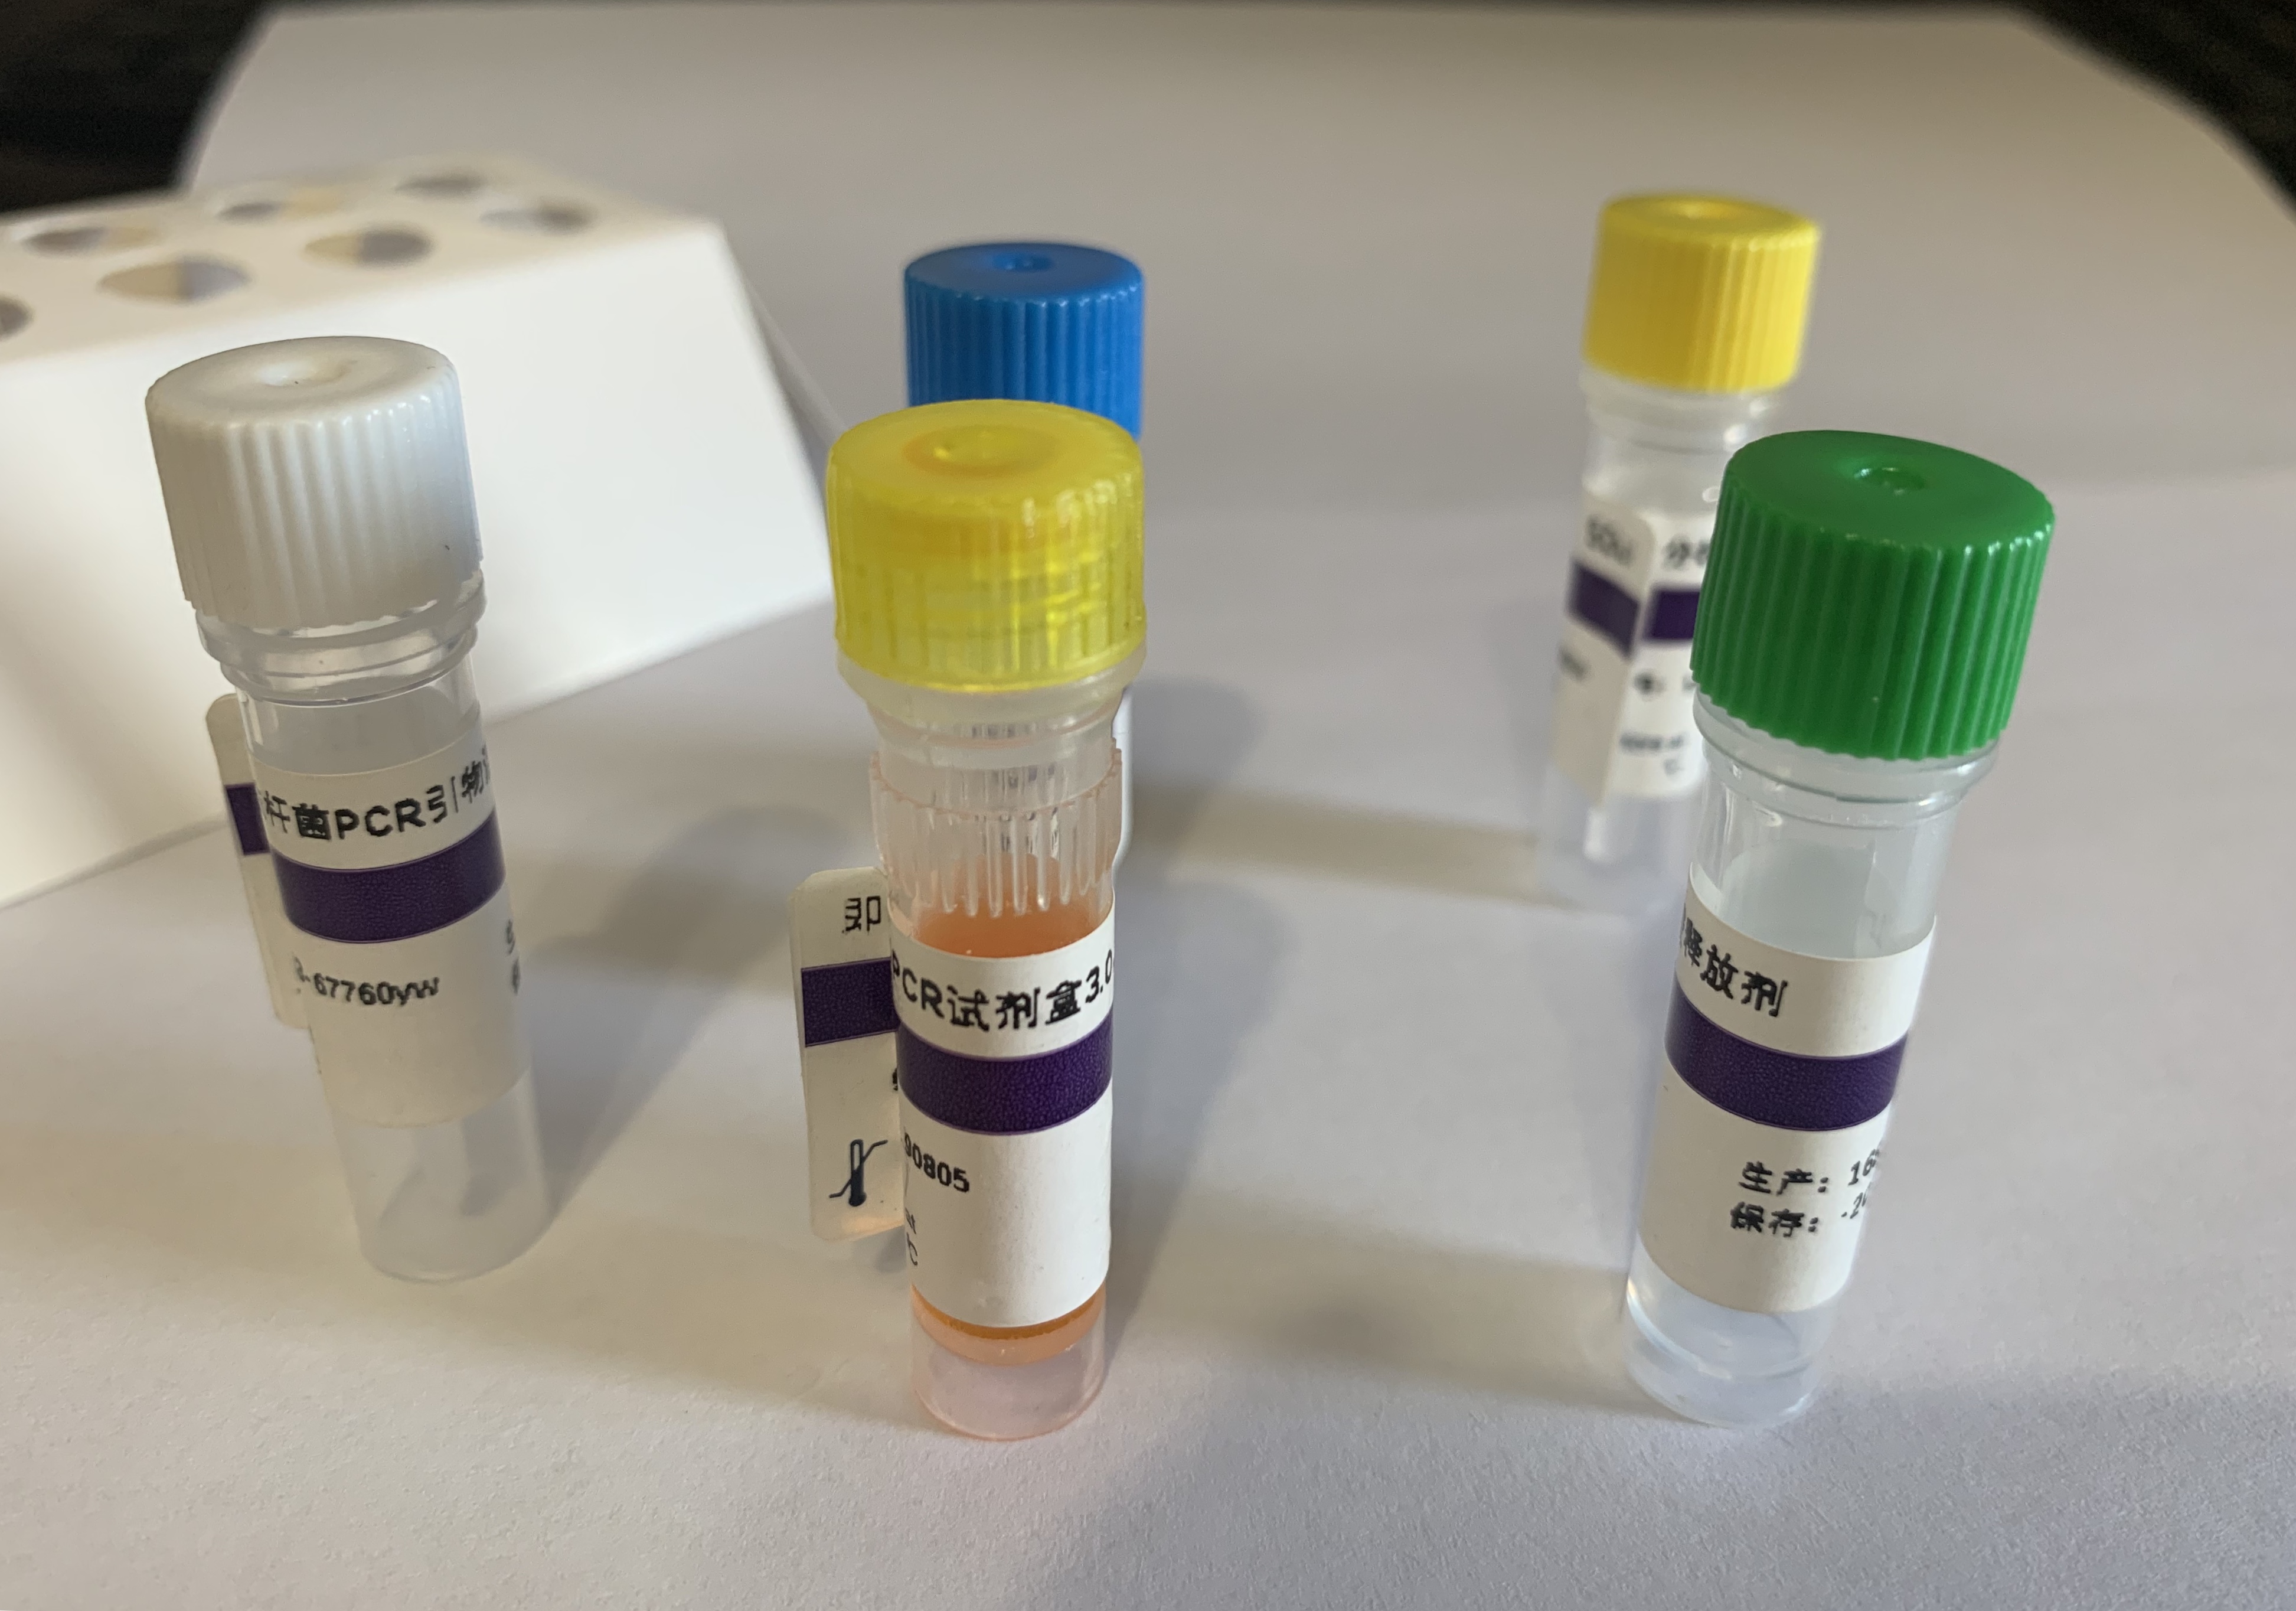 禽疱疹病毒通用染料法荧光定量PCR试剂盒